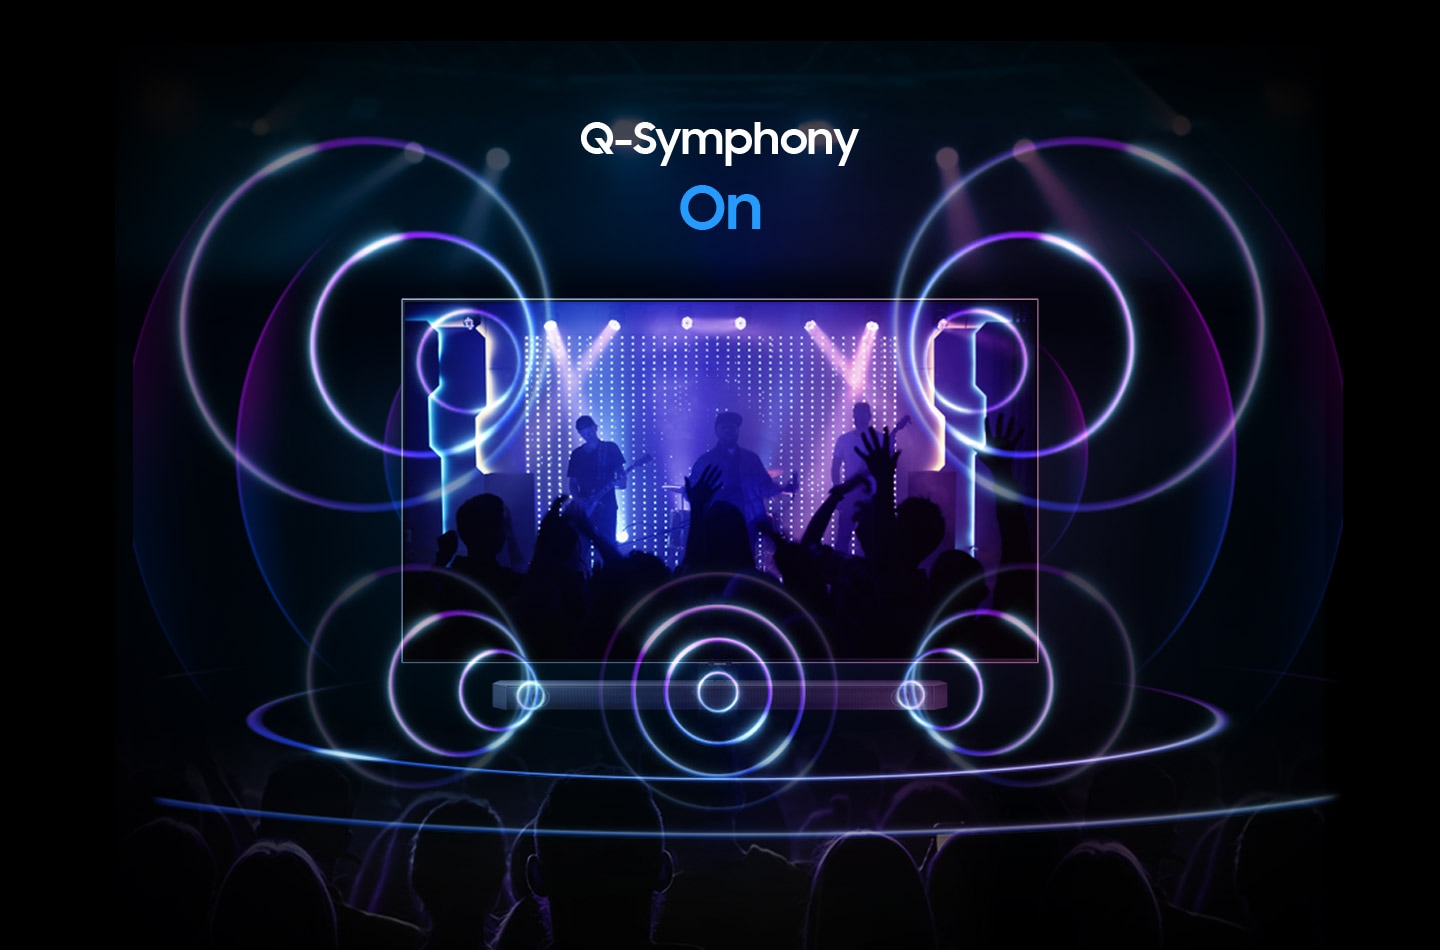 Seul le son de la barre de son est activé lorsque Q-Symphony est désactivé.  Le son du téléviseur et de la barre de son est activé simultanément lorsque Q-Symphony est activé.